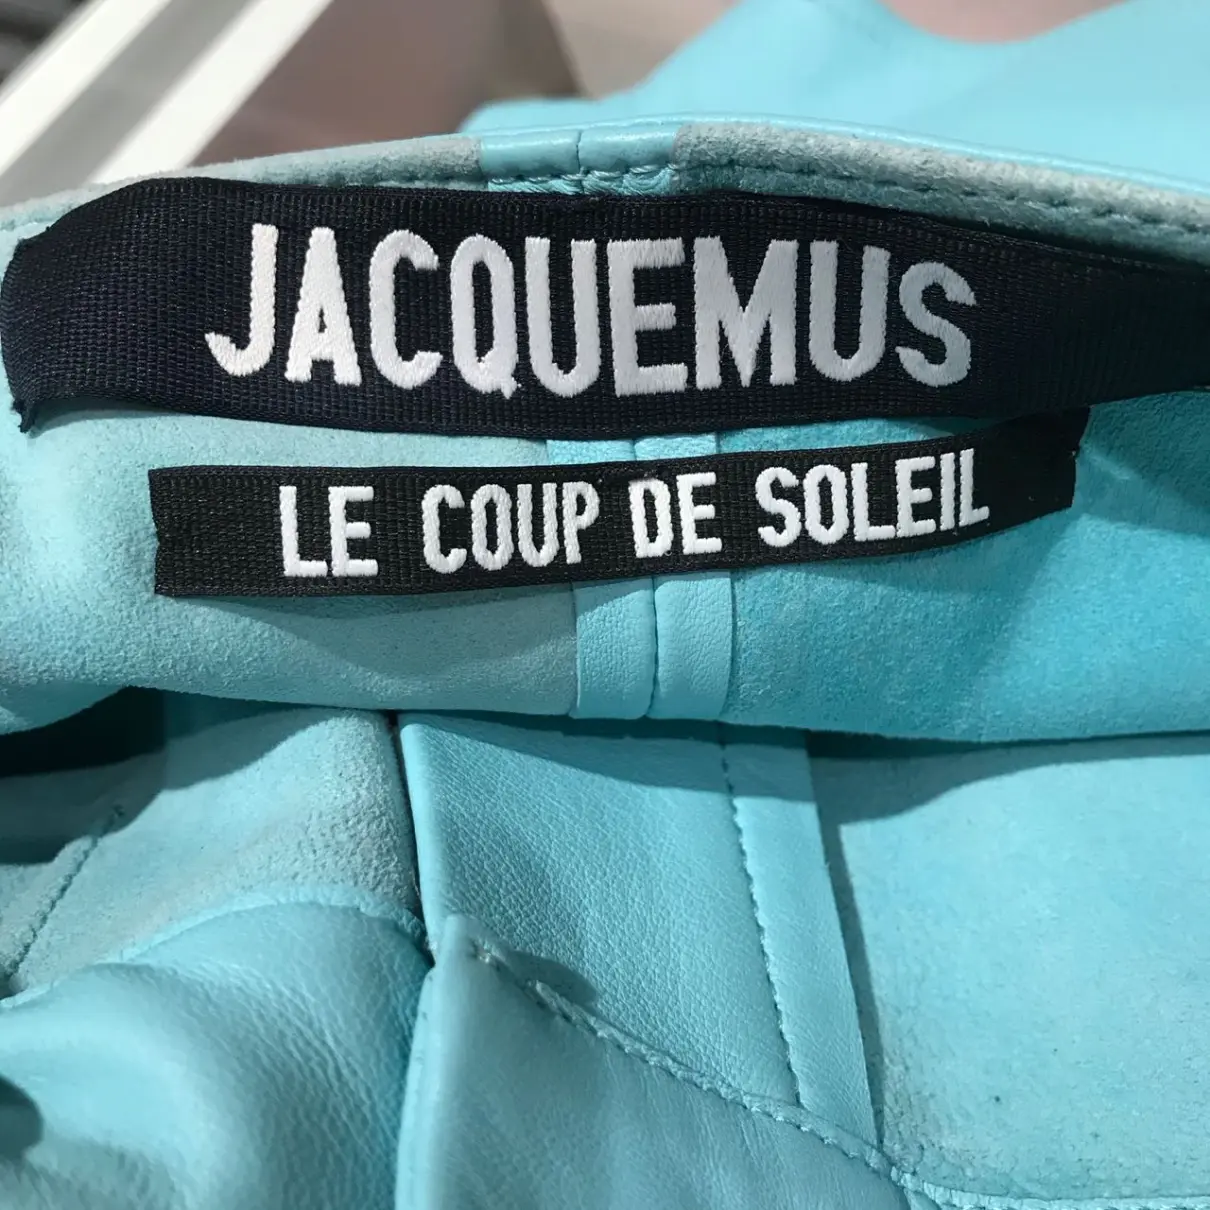 Le coup de soleil leather mini short Jacquemus